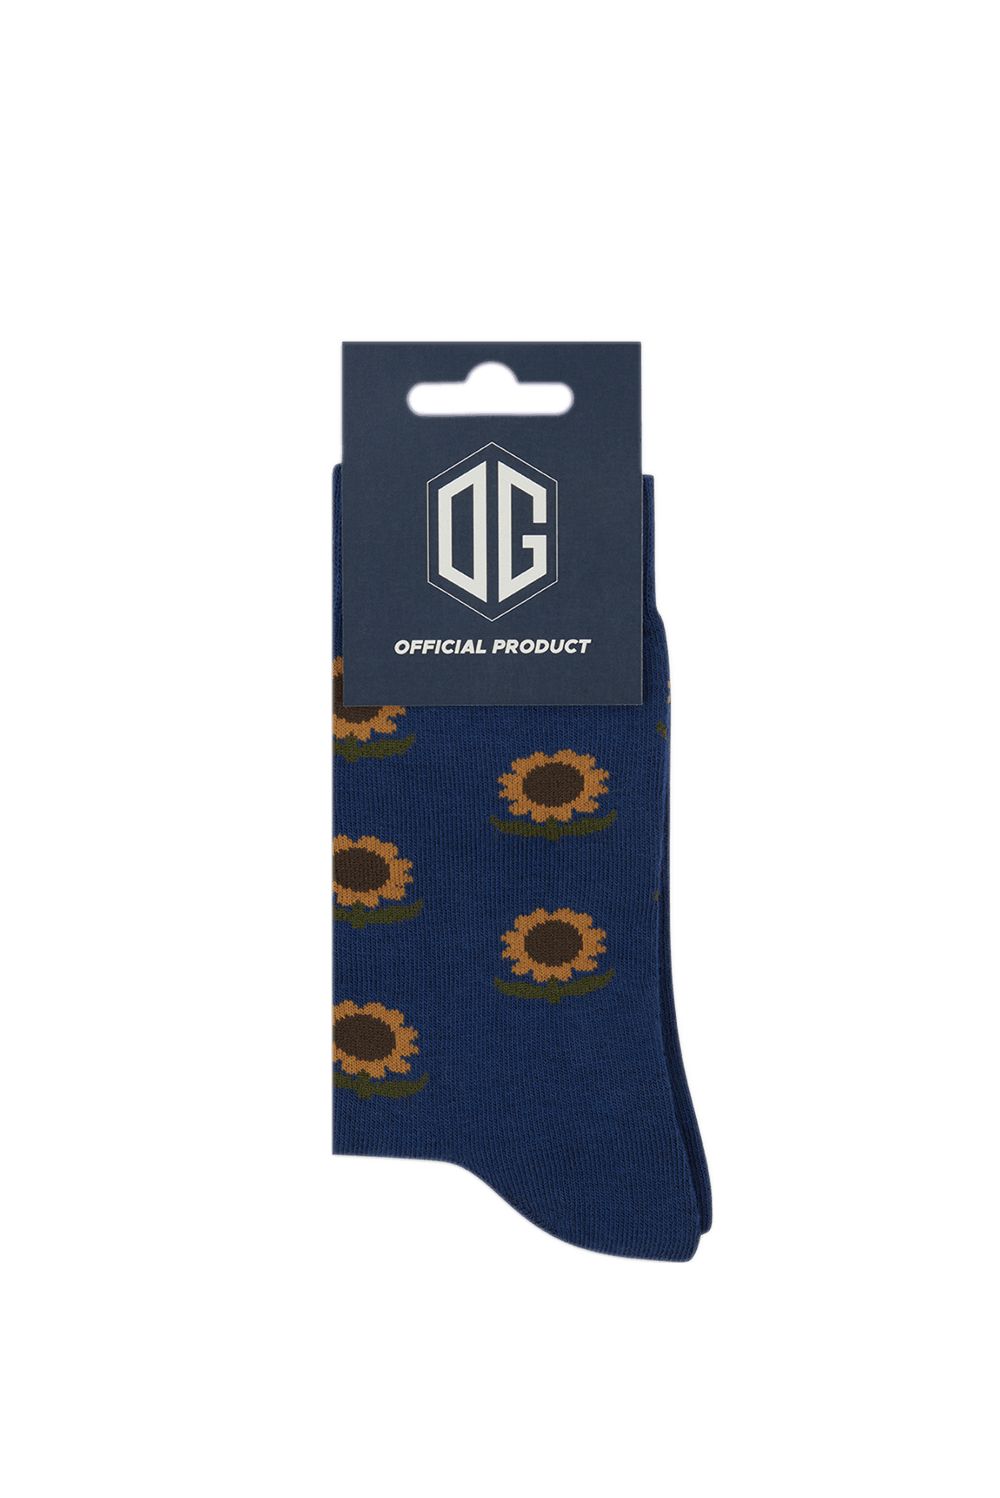 OG Sunflower Socks.
Источник: OG